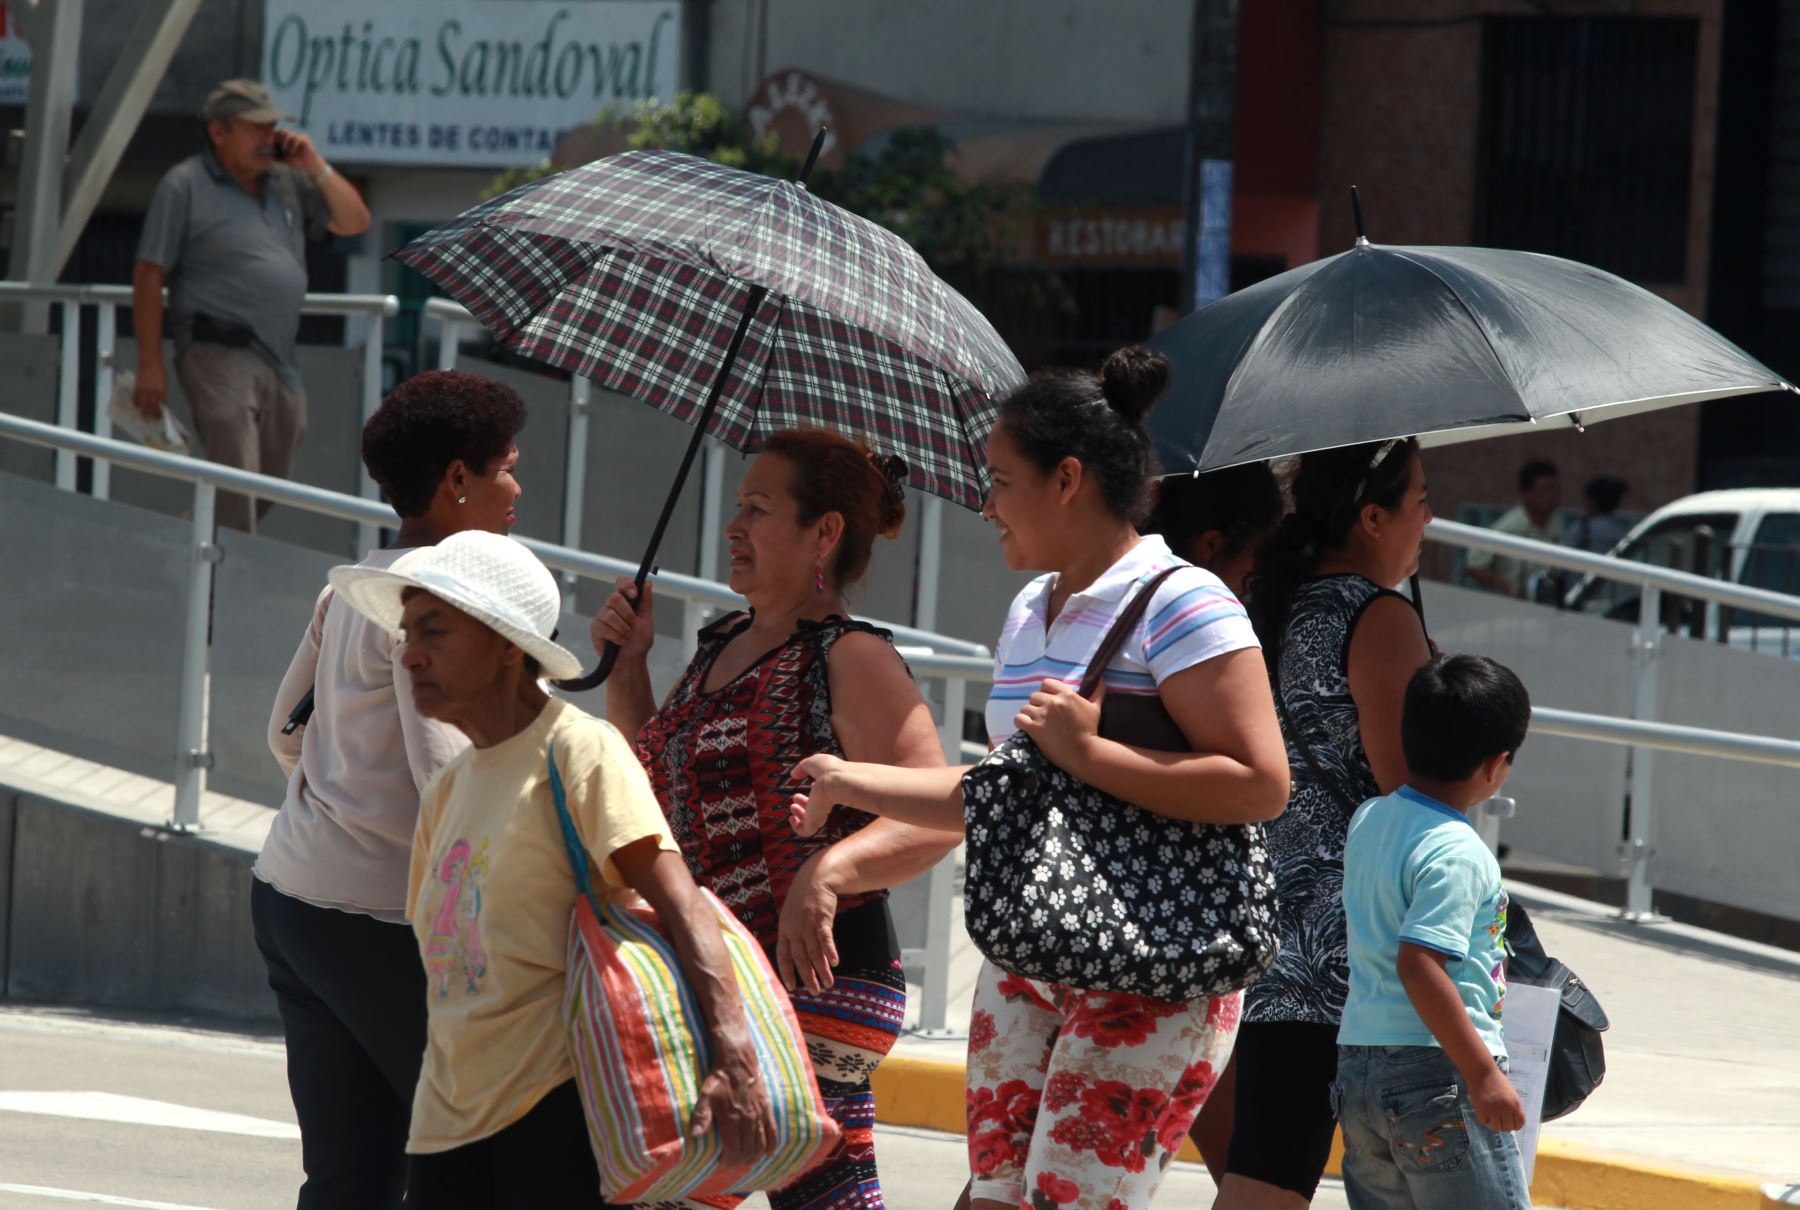 Verano 2024: Lima tendría temperaturas de más de 30 grados hasta marzo del siguiente año